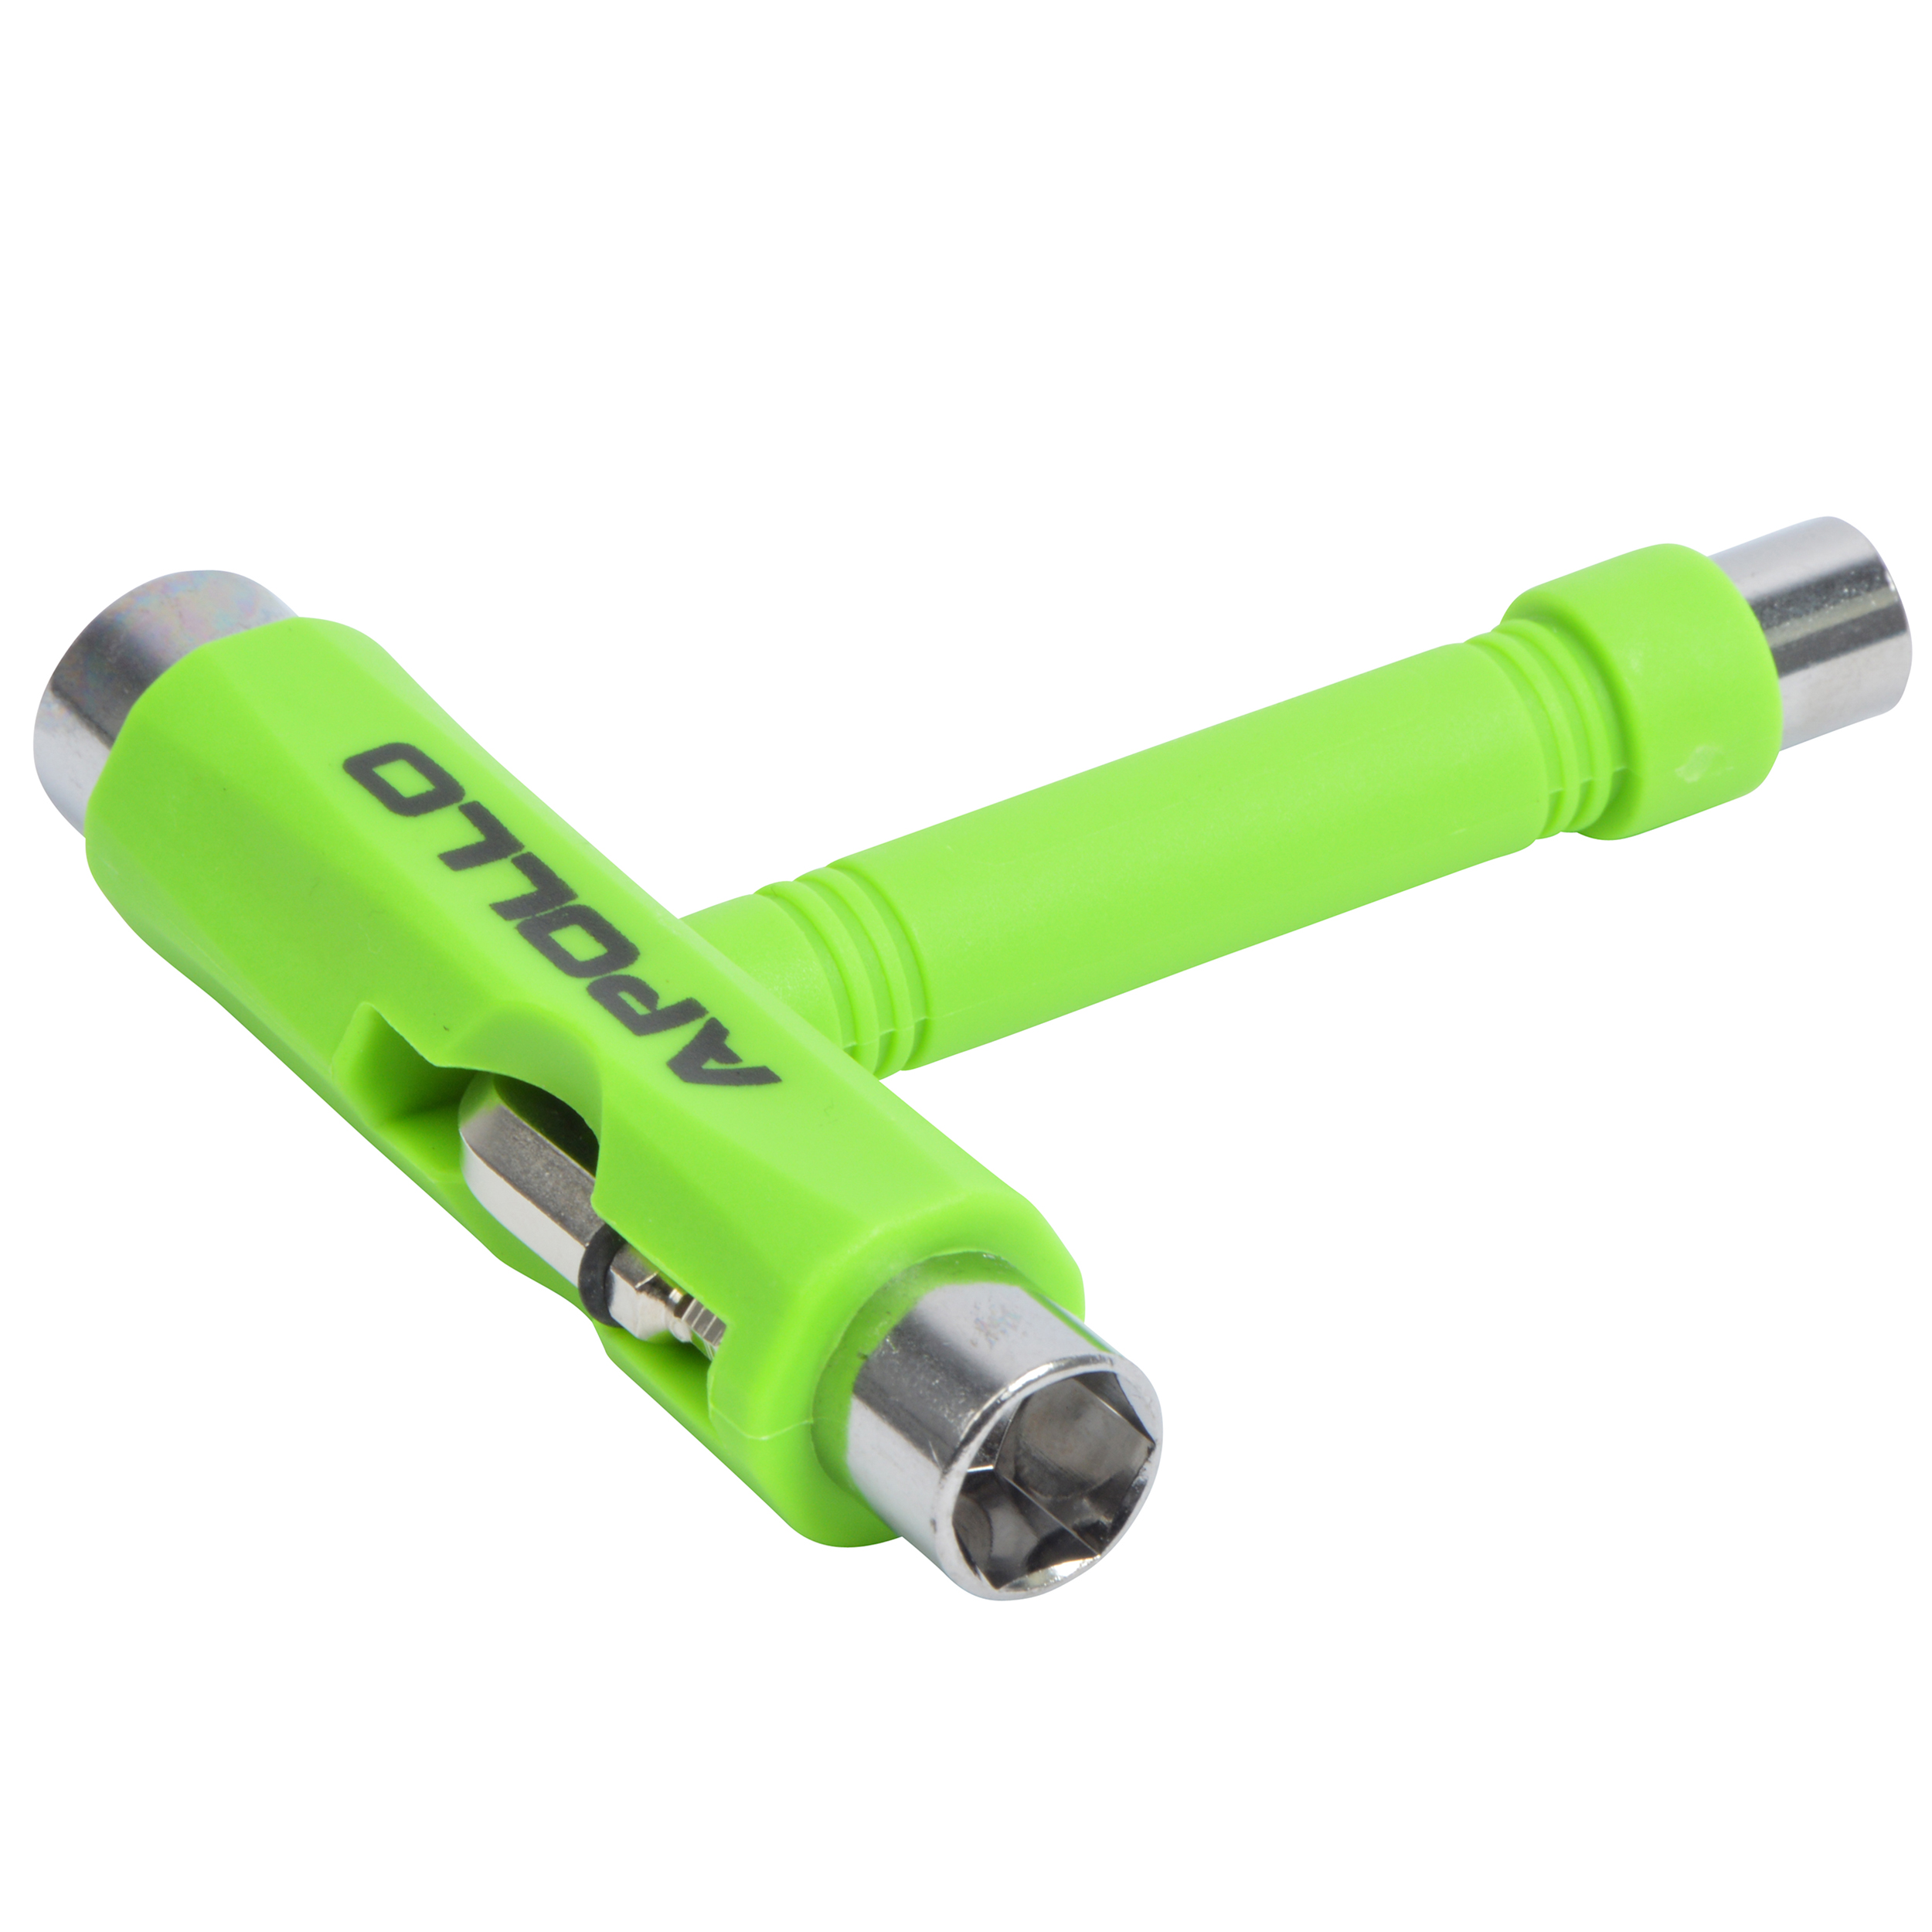 T-Tool Schraubenschlüssel für Skateboards & Longboards - Farbe: Grün - von Apollo